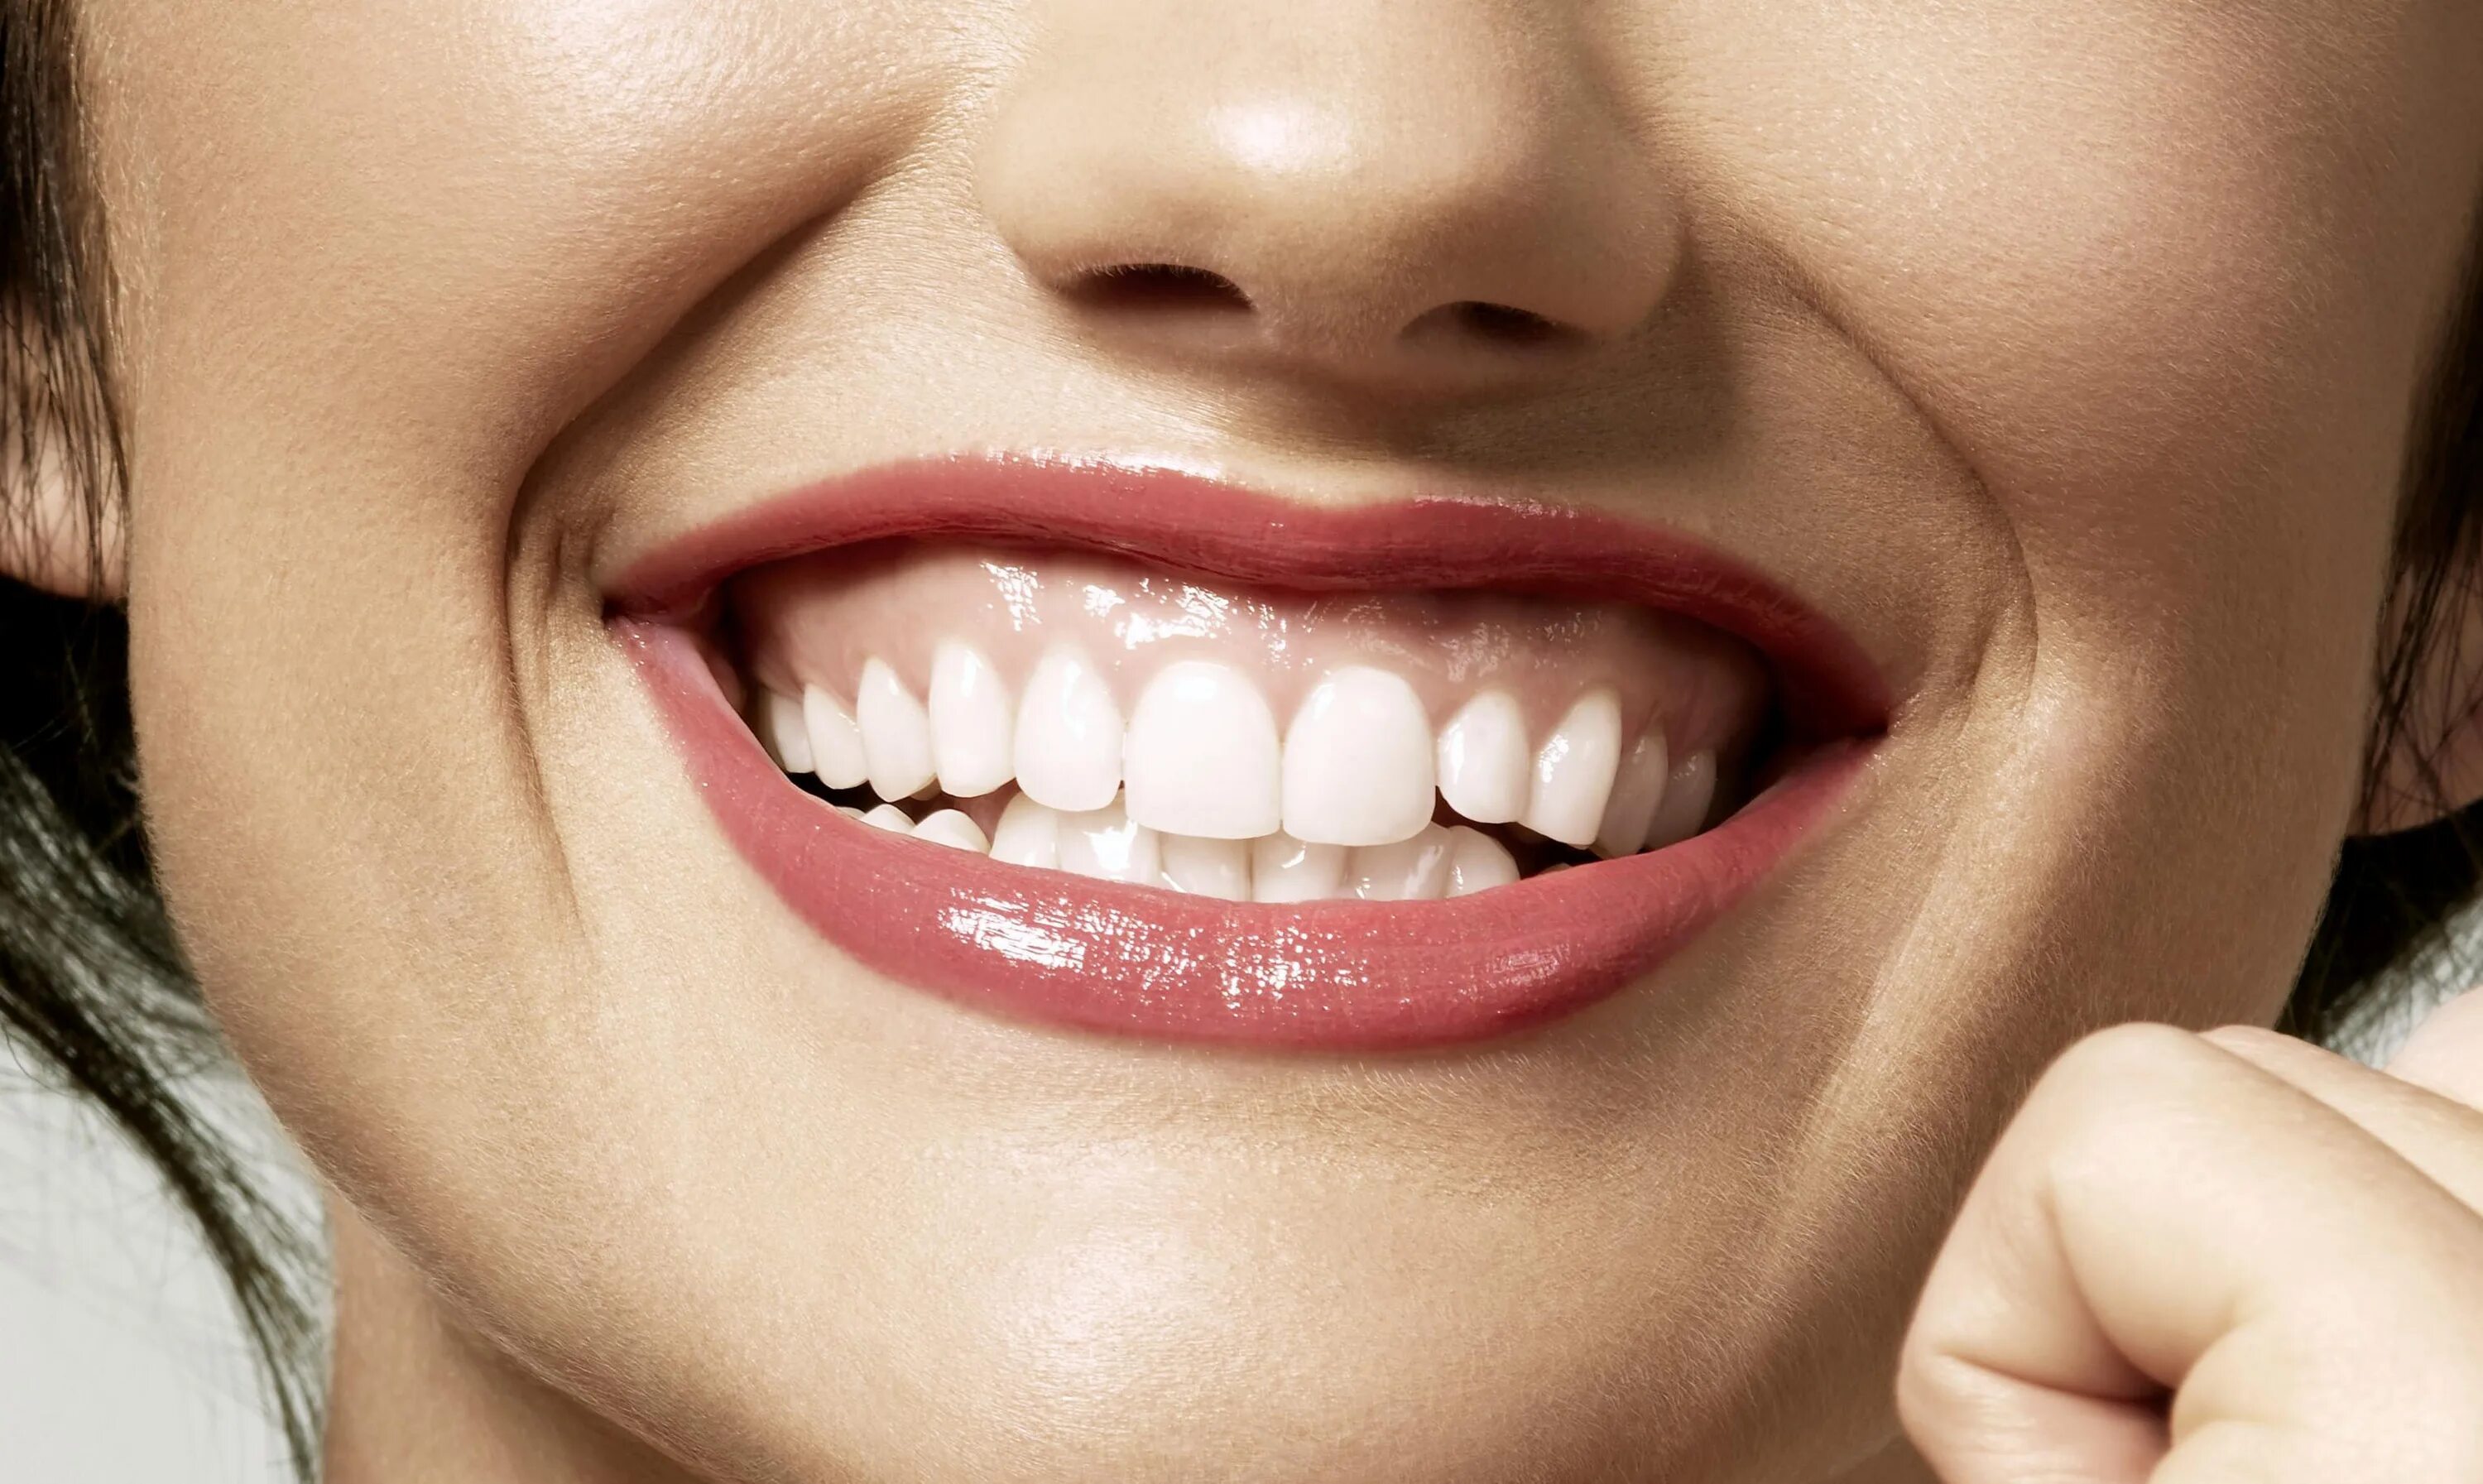 Видны верхние зубы. Десневая улыбка Gummy smile. Красивые зубы. Красивая форма зубов. Широкие зубы.